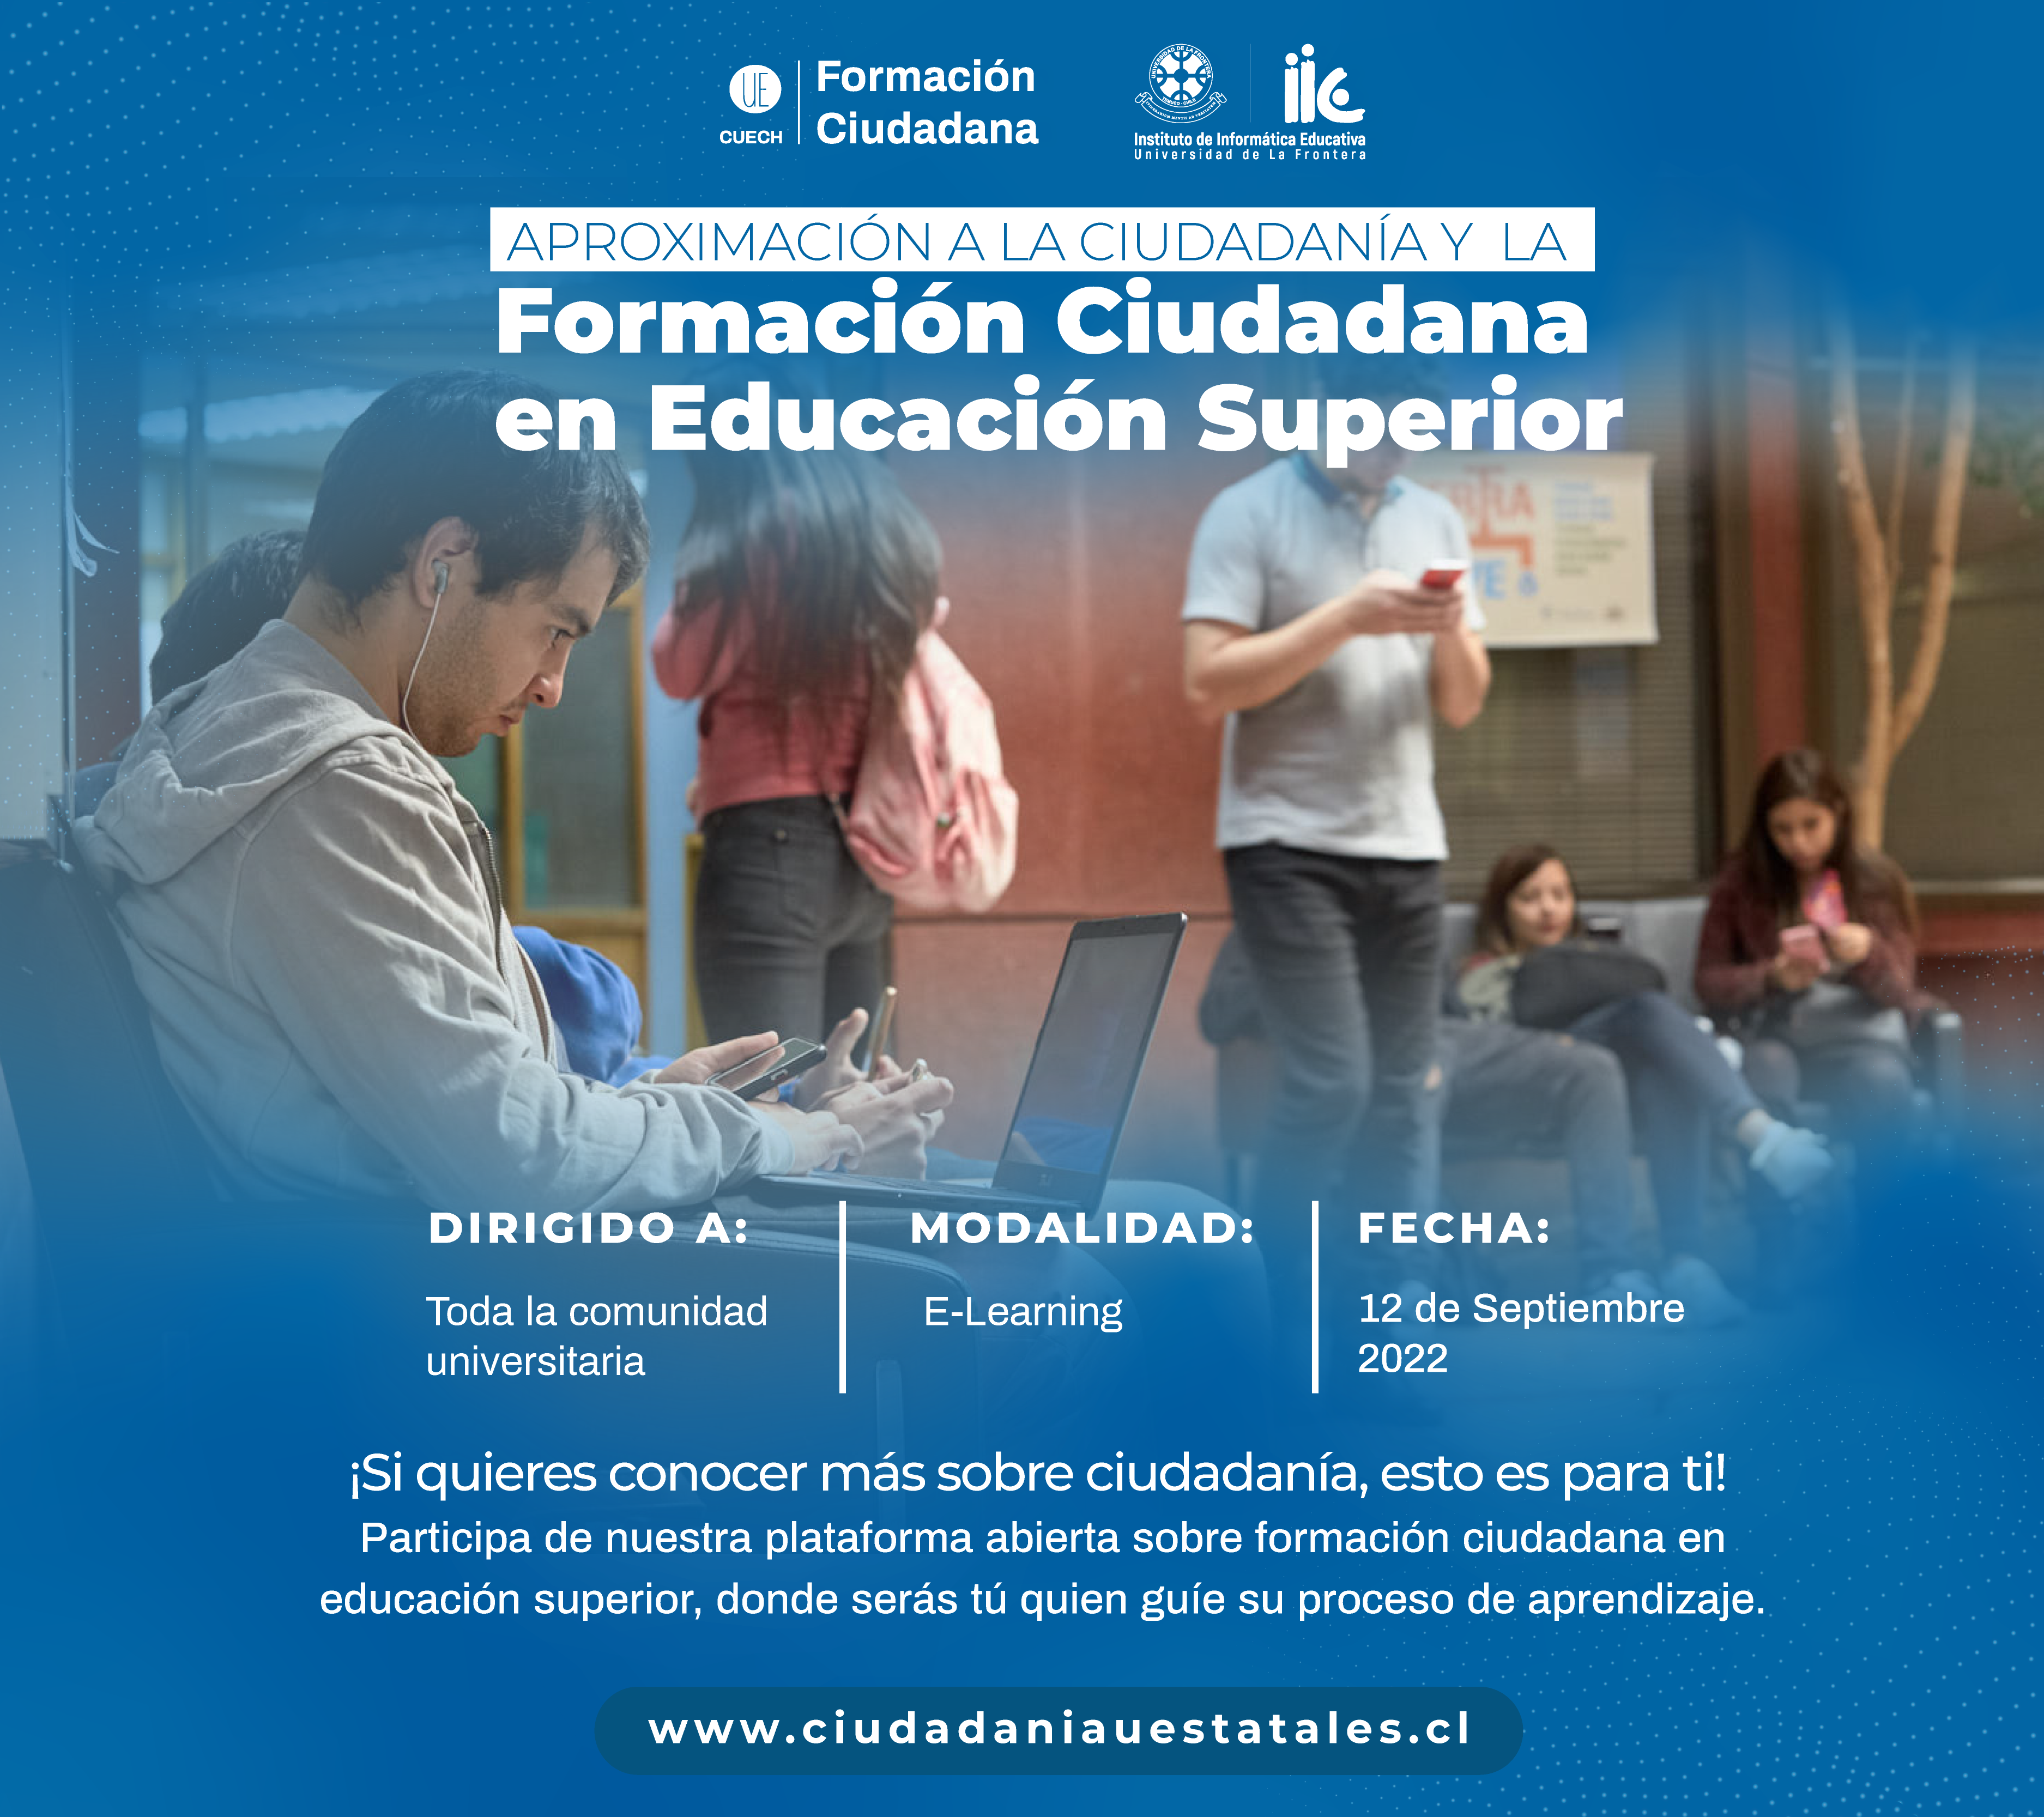 Este 12 de septiembre: Lanzamiento del Curso de Autoformación en Ciudadanía CUECH!